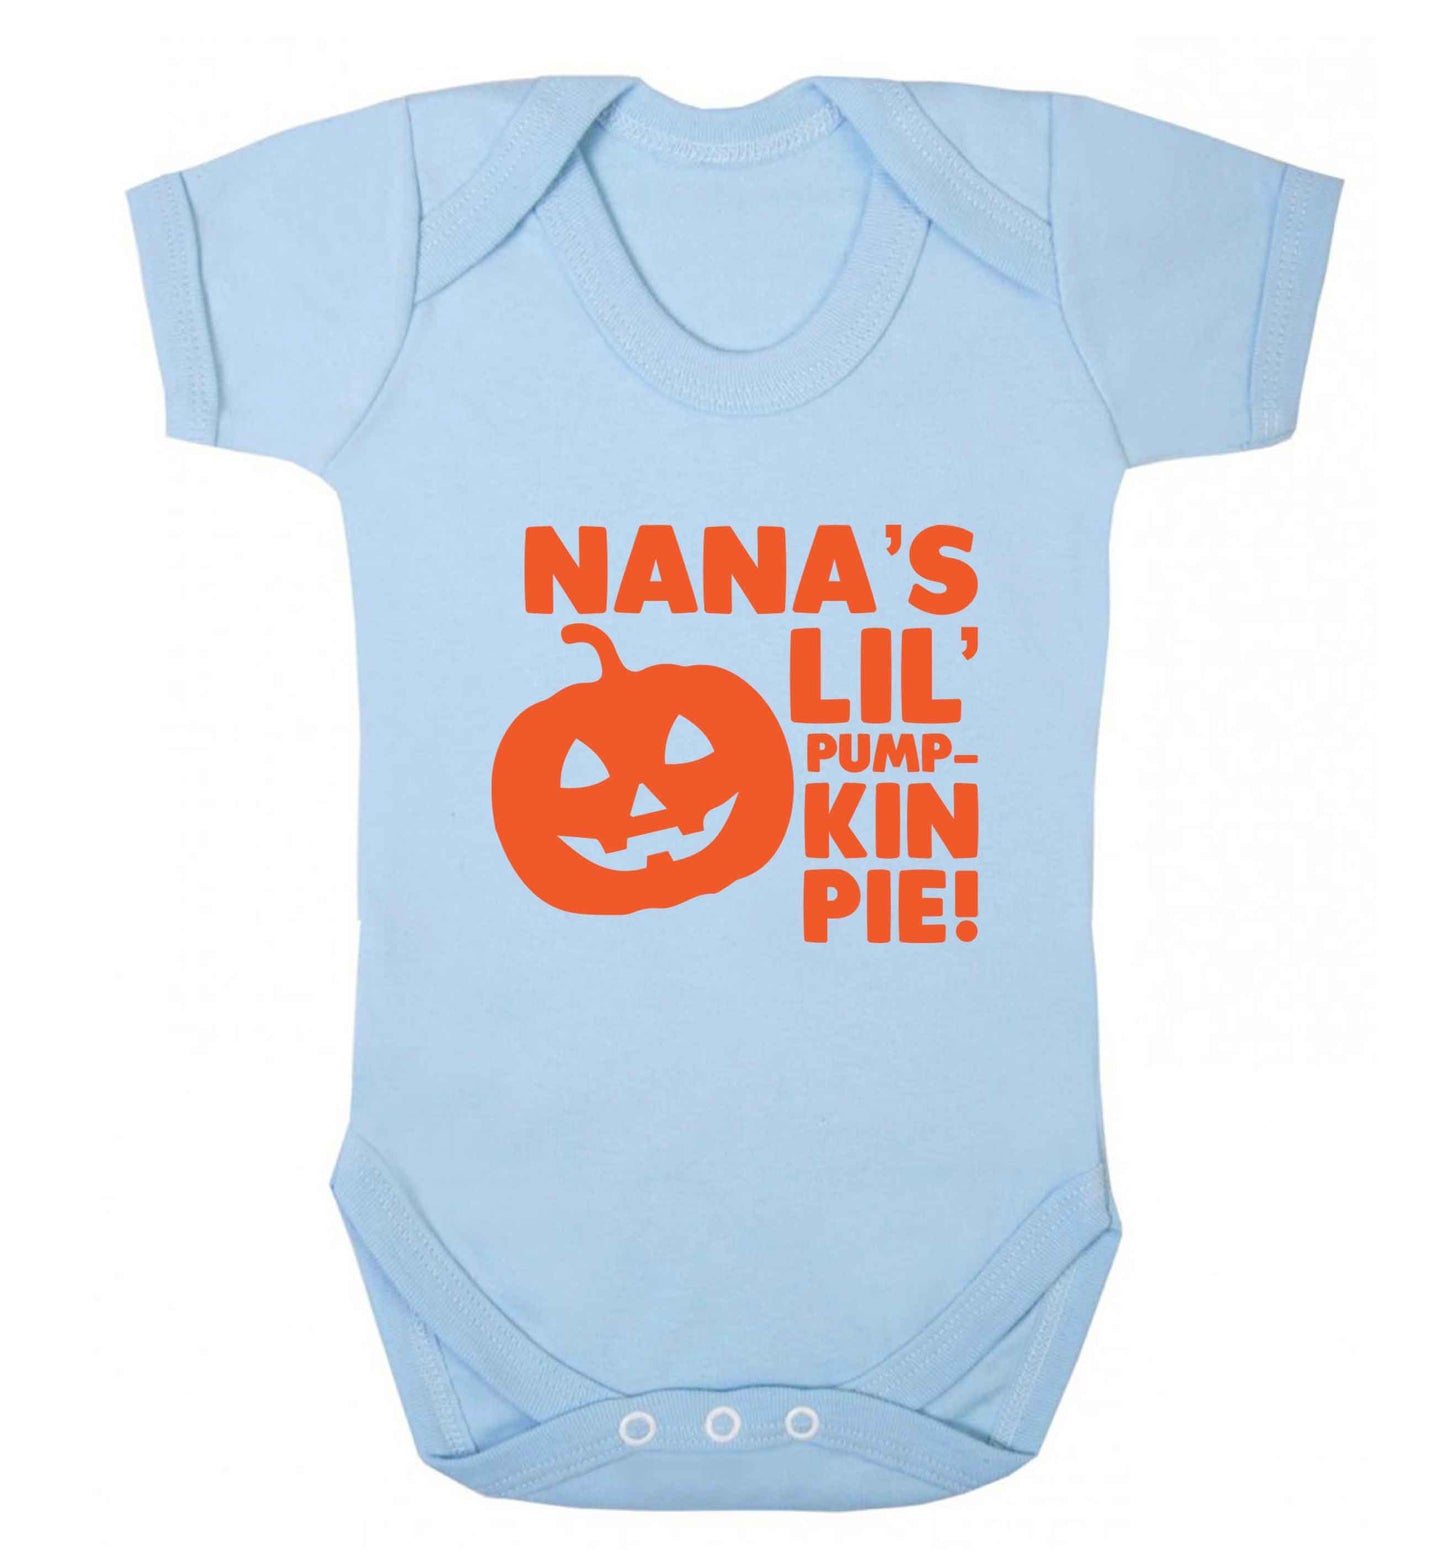 Nana's lil' pumpkin pie baby vest pale blue 18-24 months